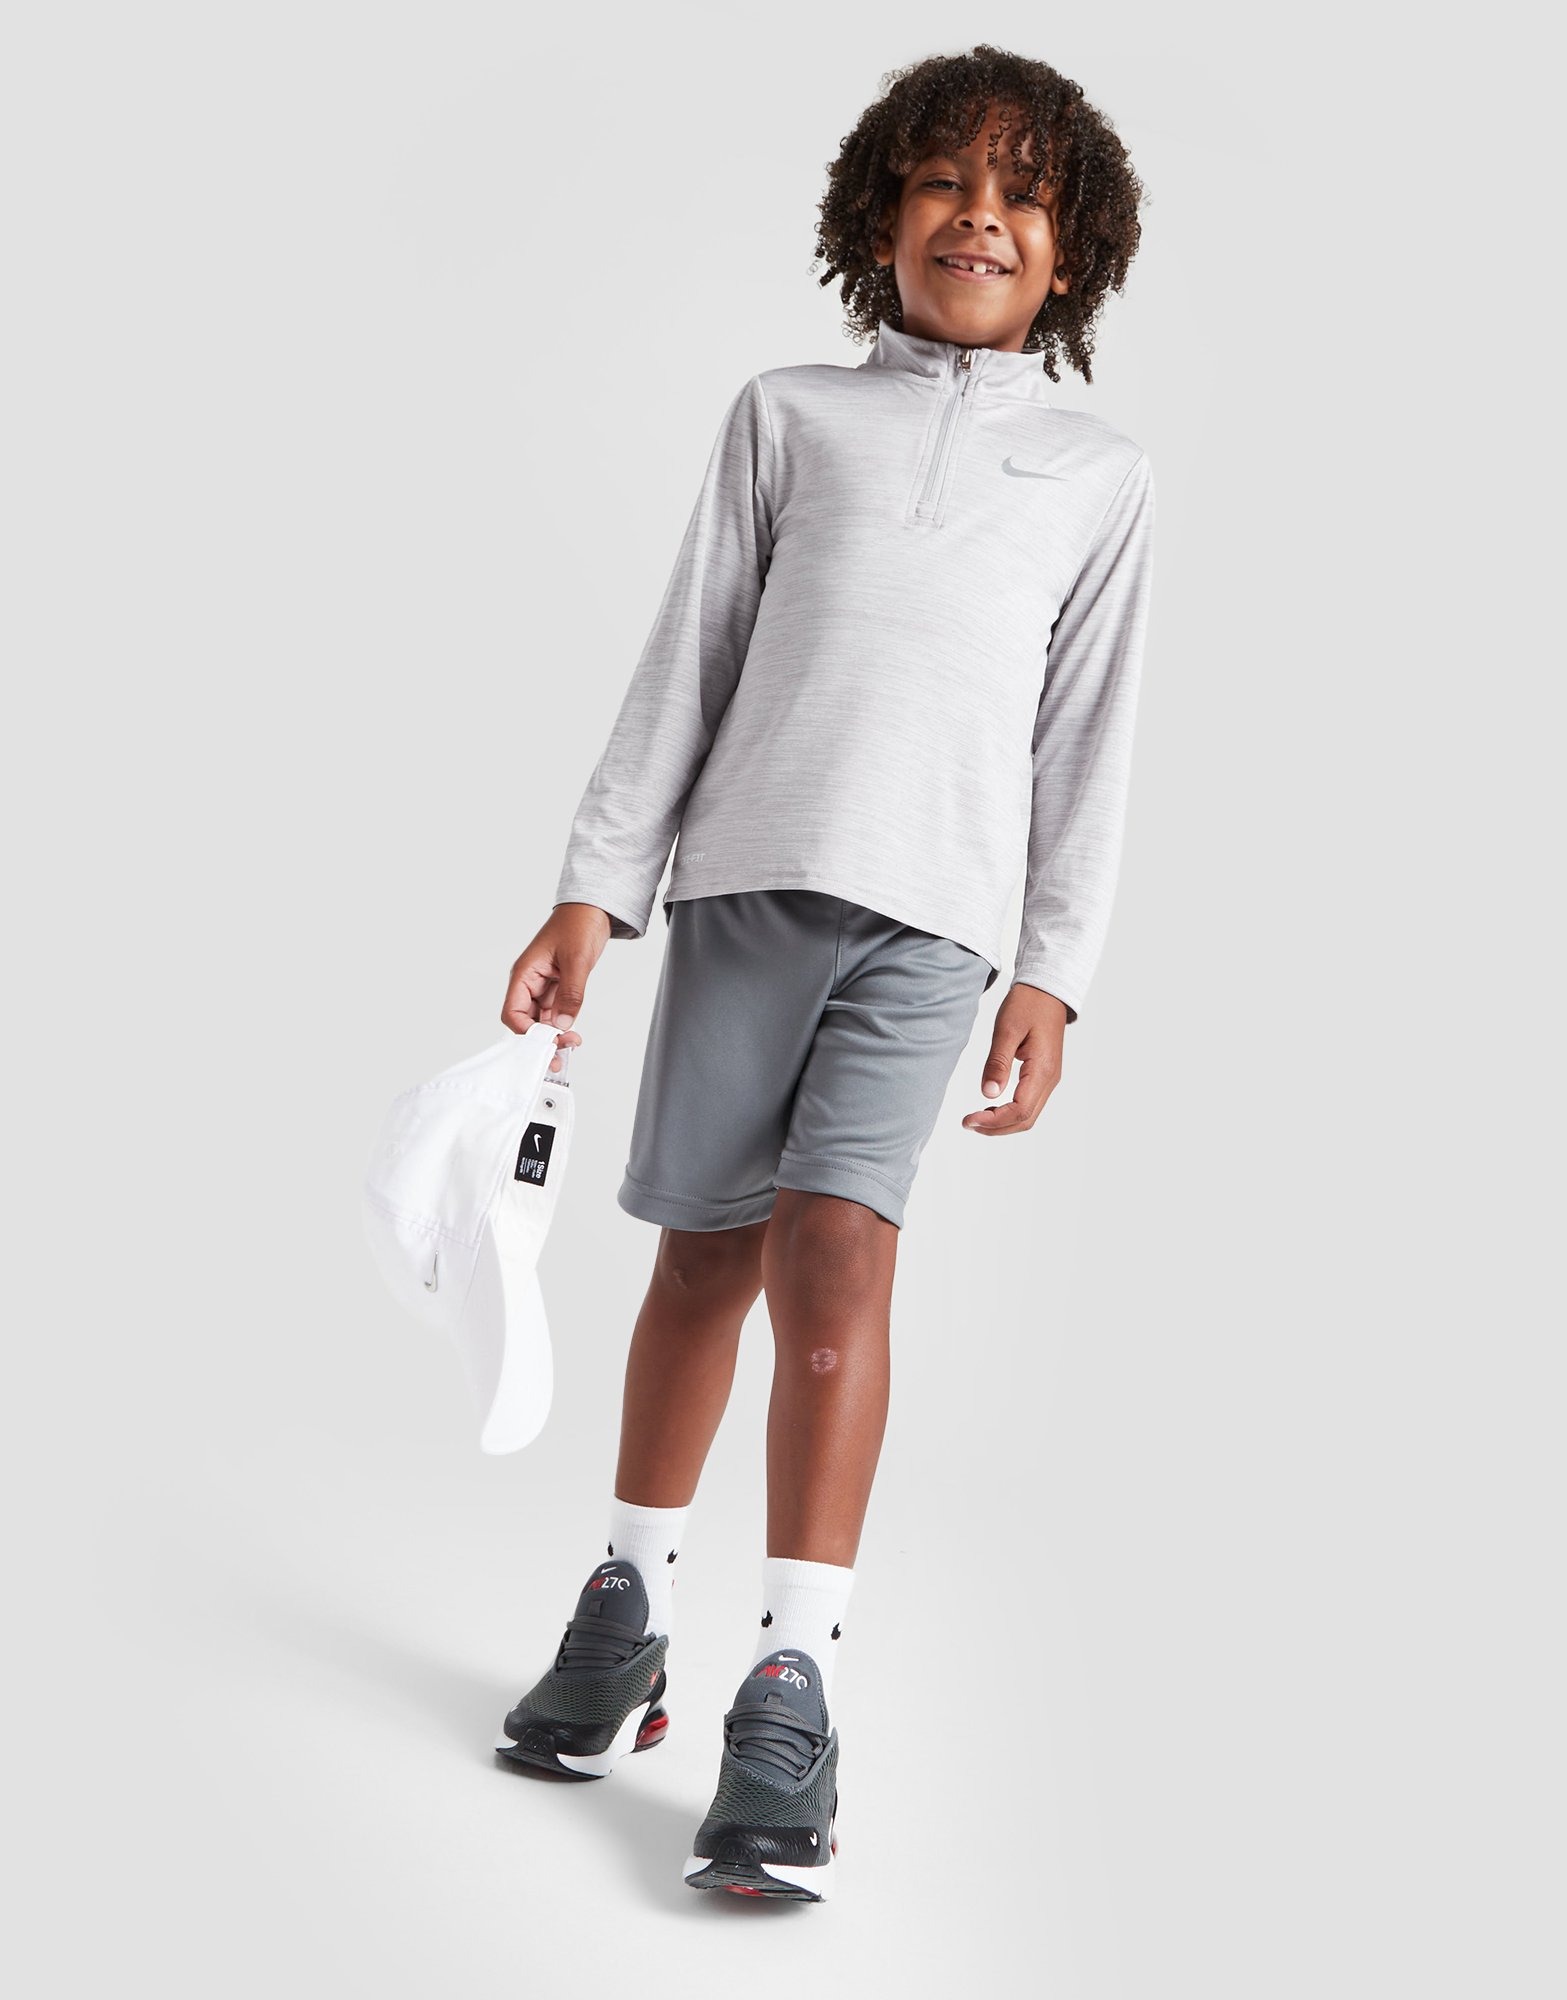 Grey Nike Pacer 1/4 Zip Top/Shorts Set Children | JD Sports UK